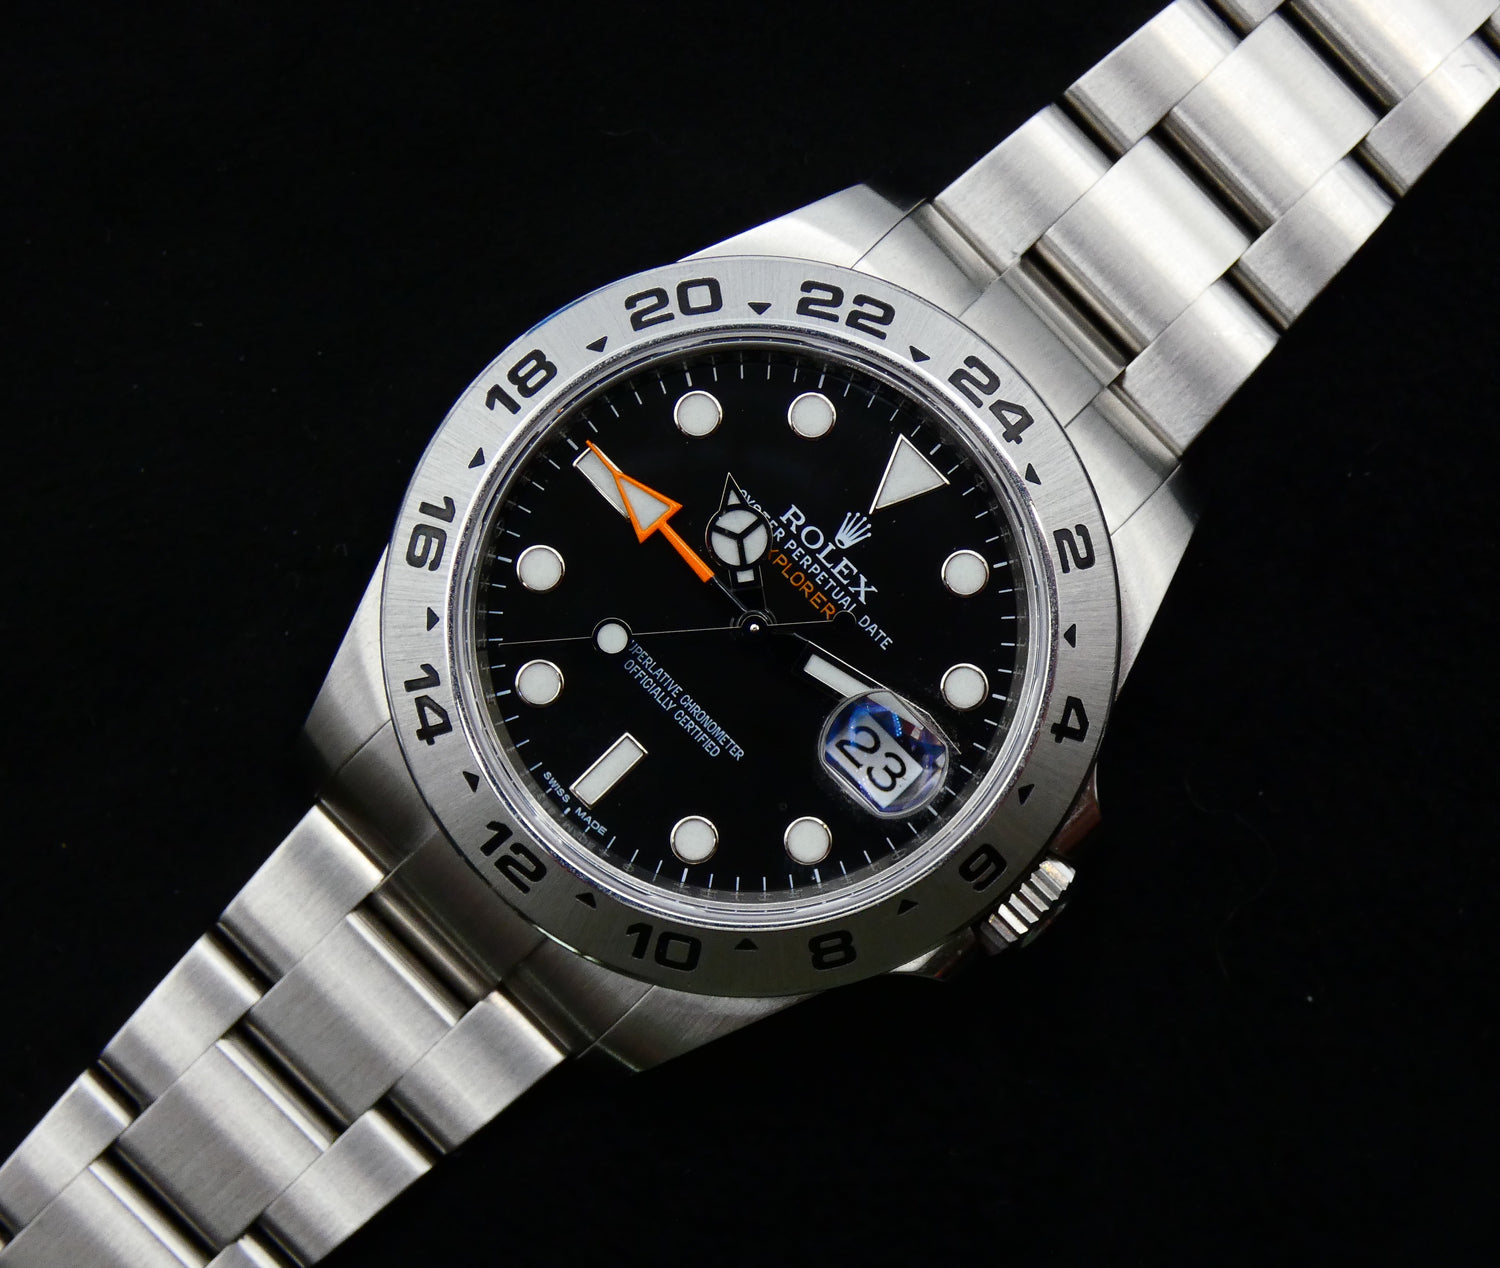 Rolex Explorer II 2012 / NL watch 216570